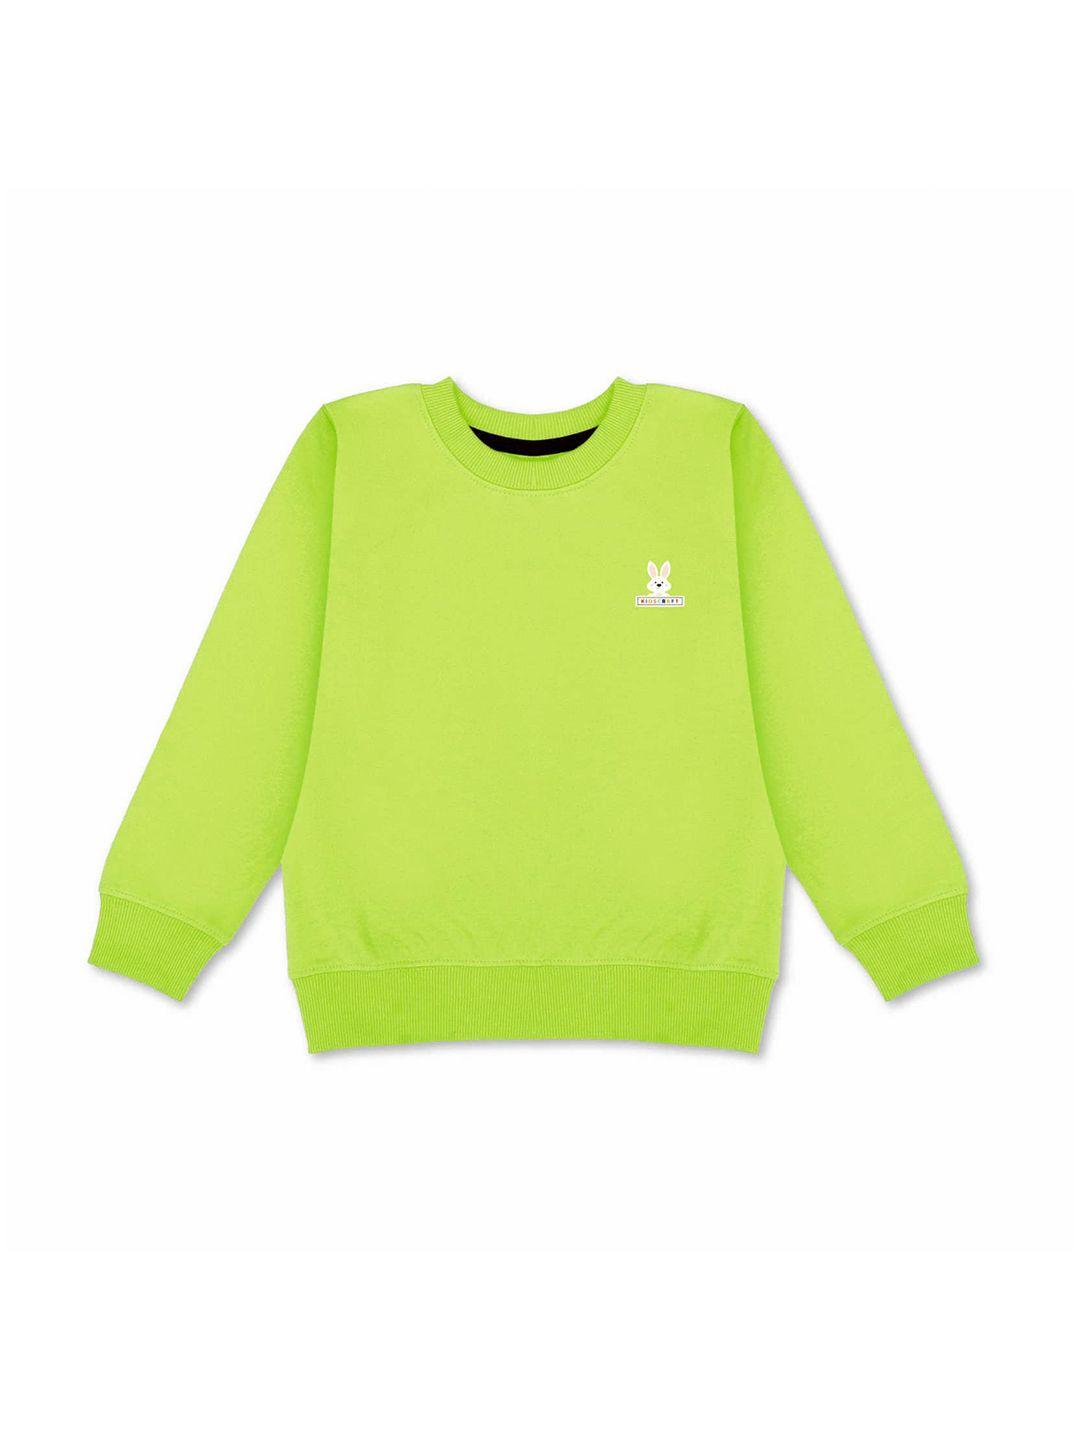 kidscraft boys lime green sweatshirt